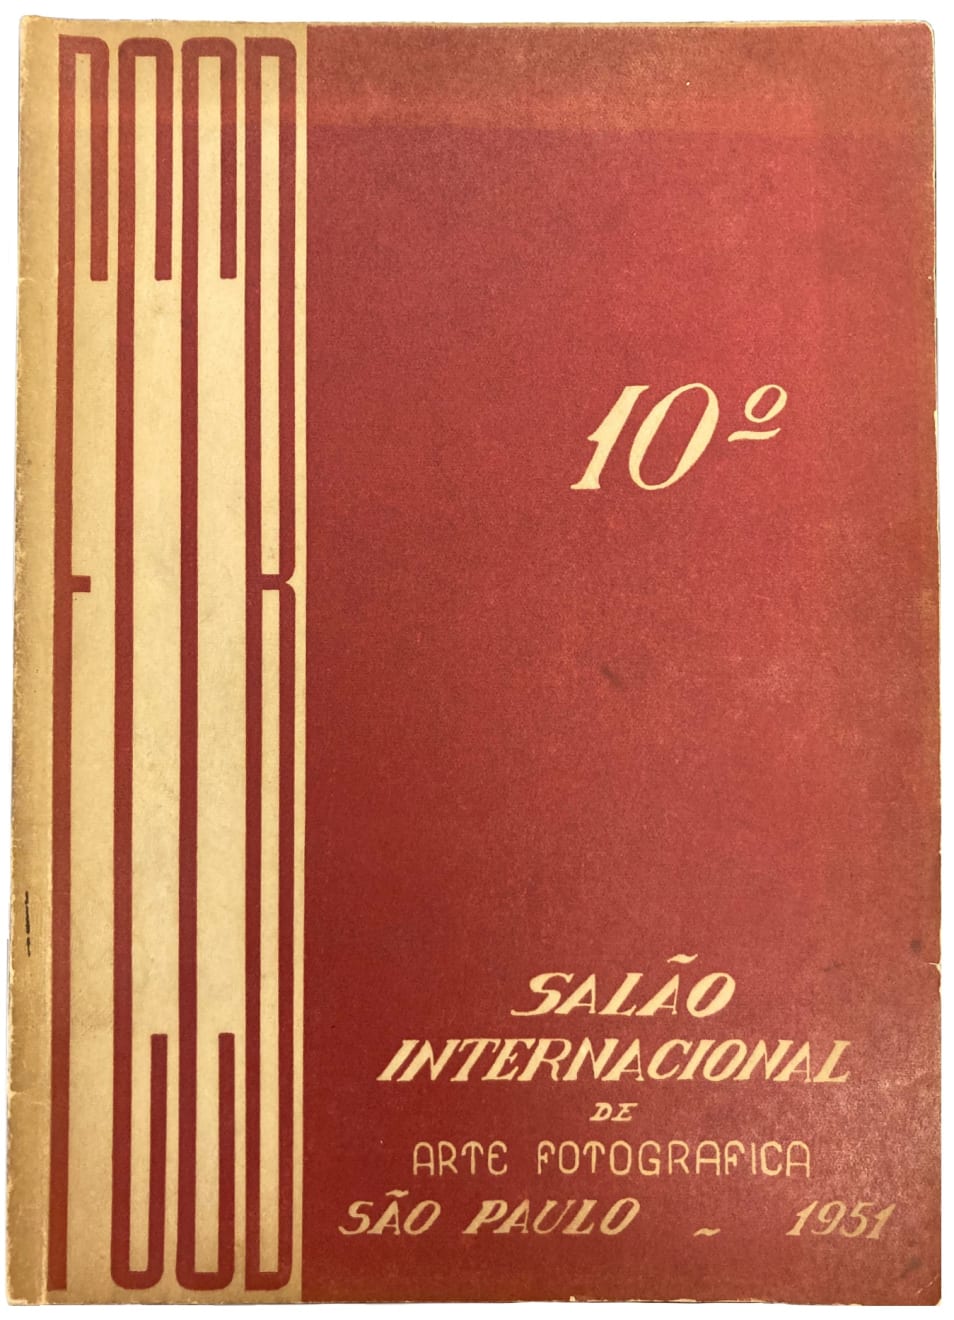 10o Salão Internacional de Arte Fotográfica, São Paulo, 1951, catálogo 10o Salão Internacional de Arte Fotográfica, São Paulo, 1951, catalogue